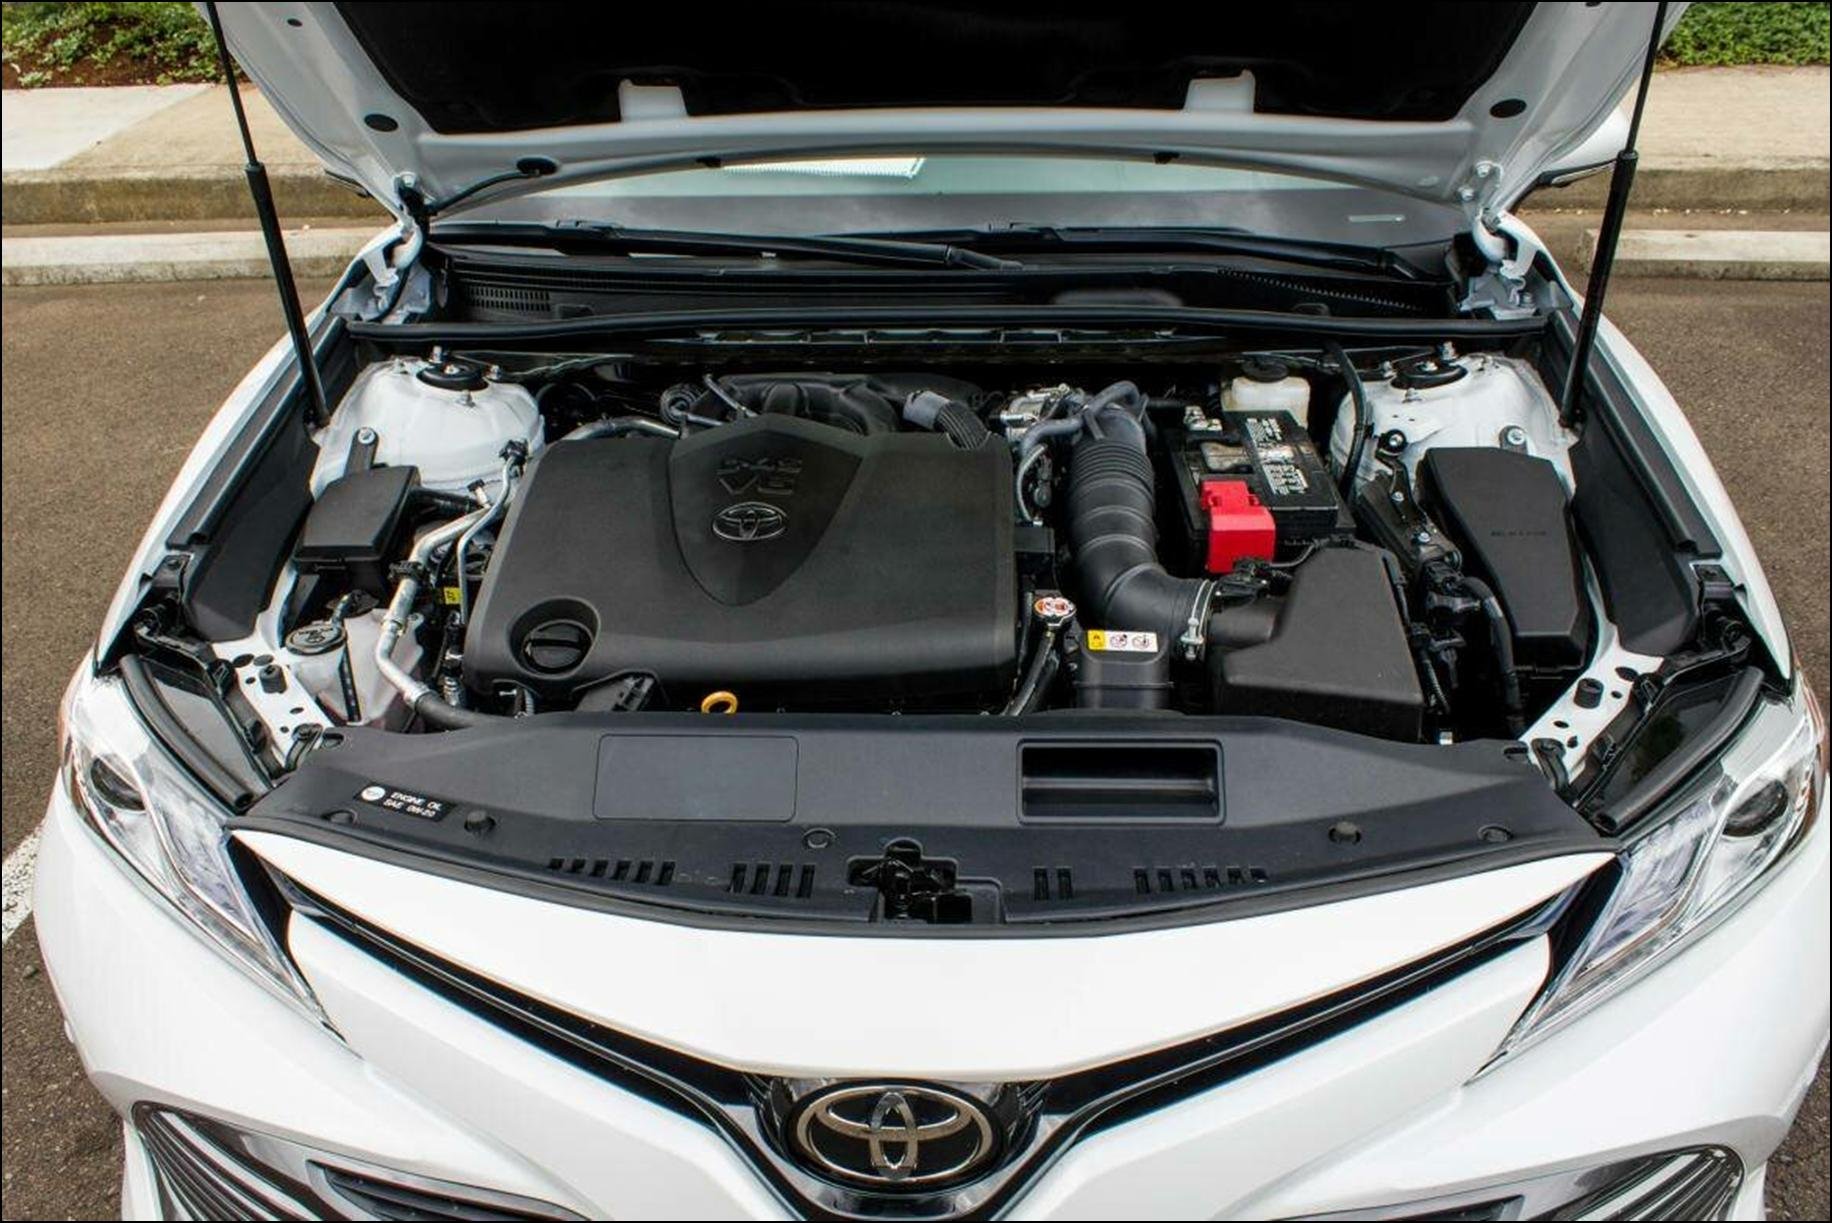 Тойота камри 40 кузов двигатель. Toyota Camry 2018 под капотом. Toyota Camry 70 engine. Подкапотное пространство Camry v70. Toyota Camry 2018 мотор.